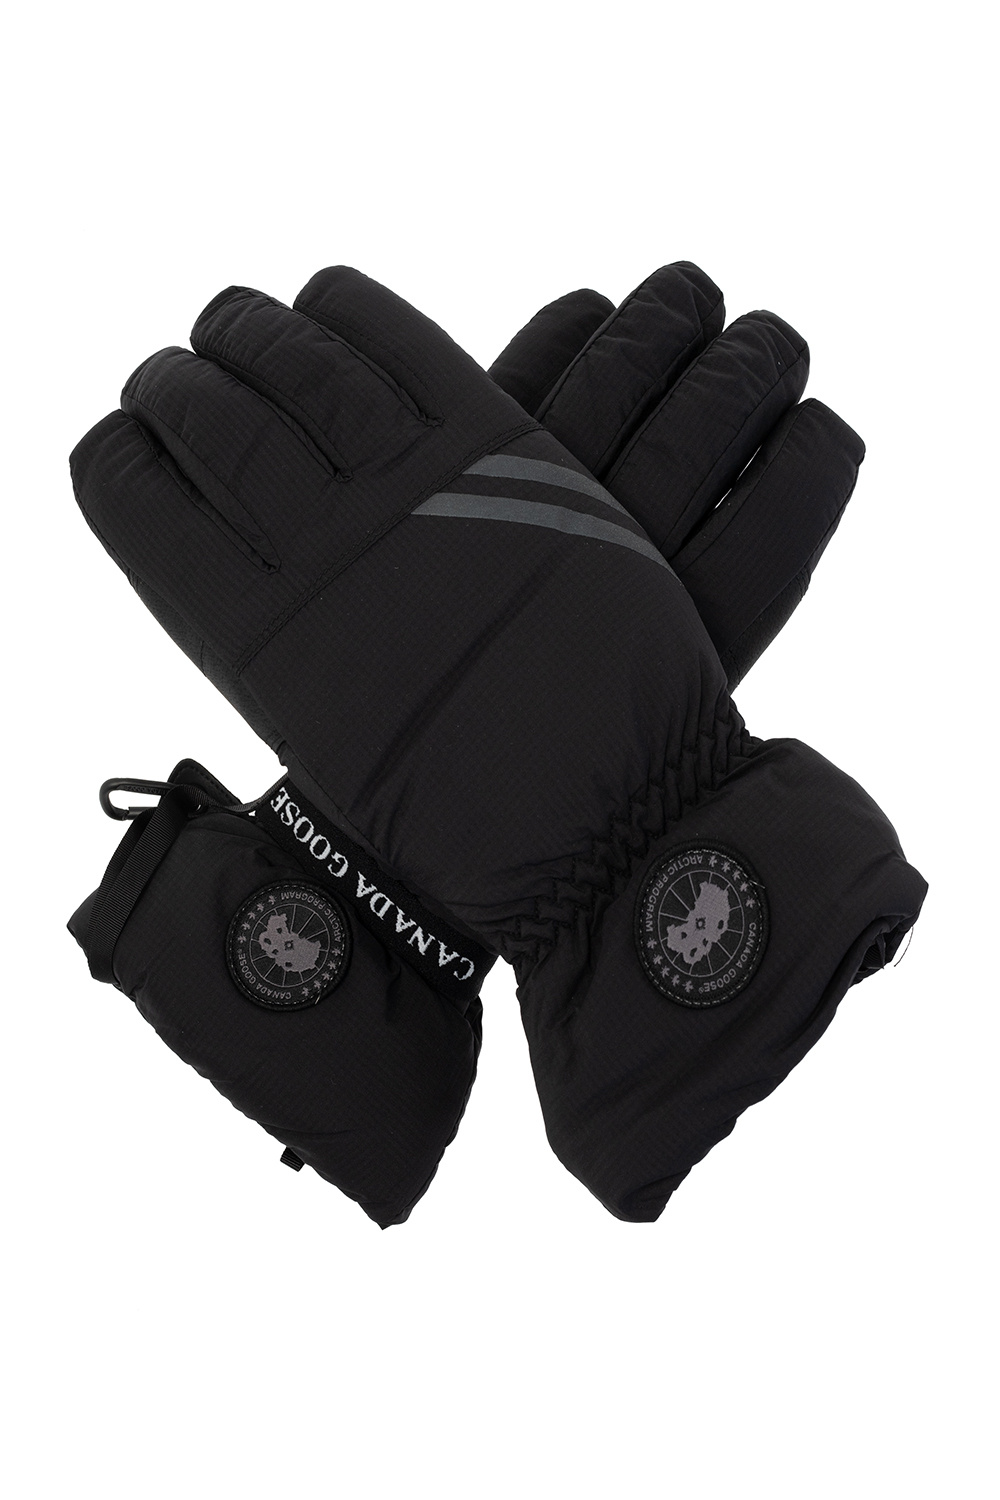 Canada Goose Ski gloves